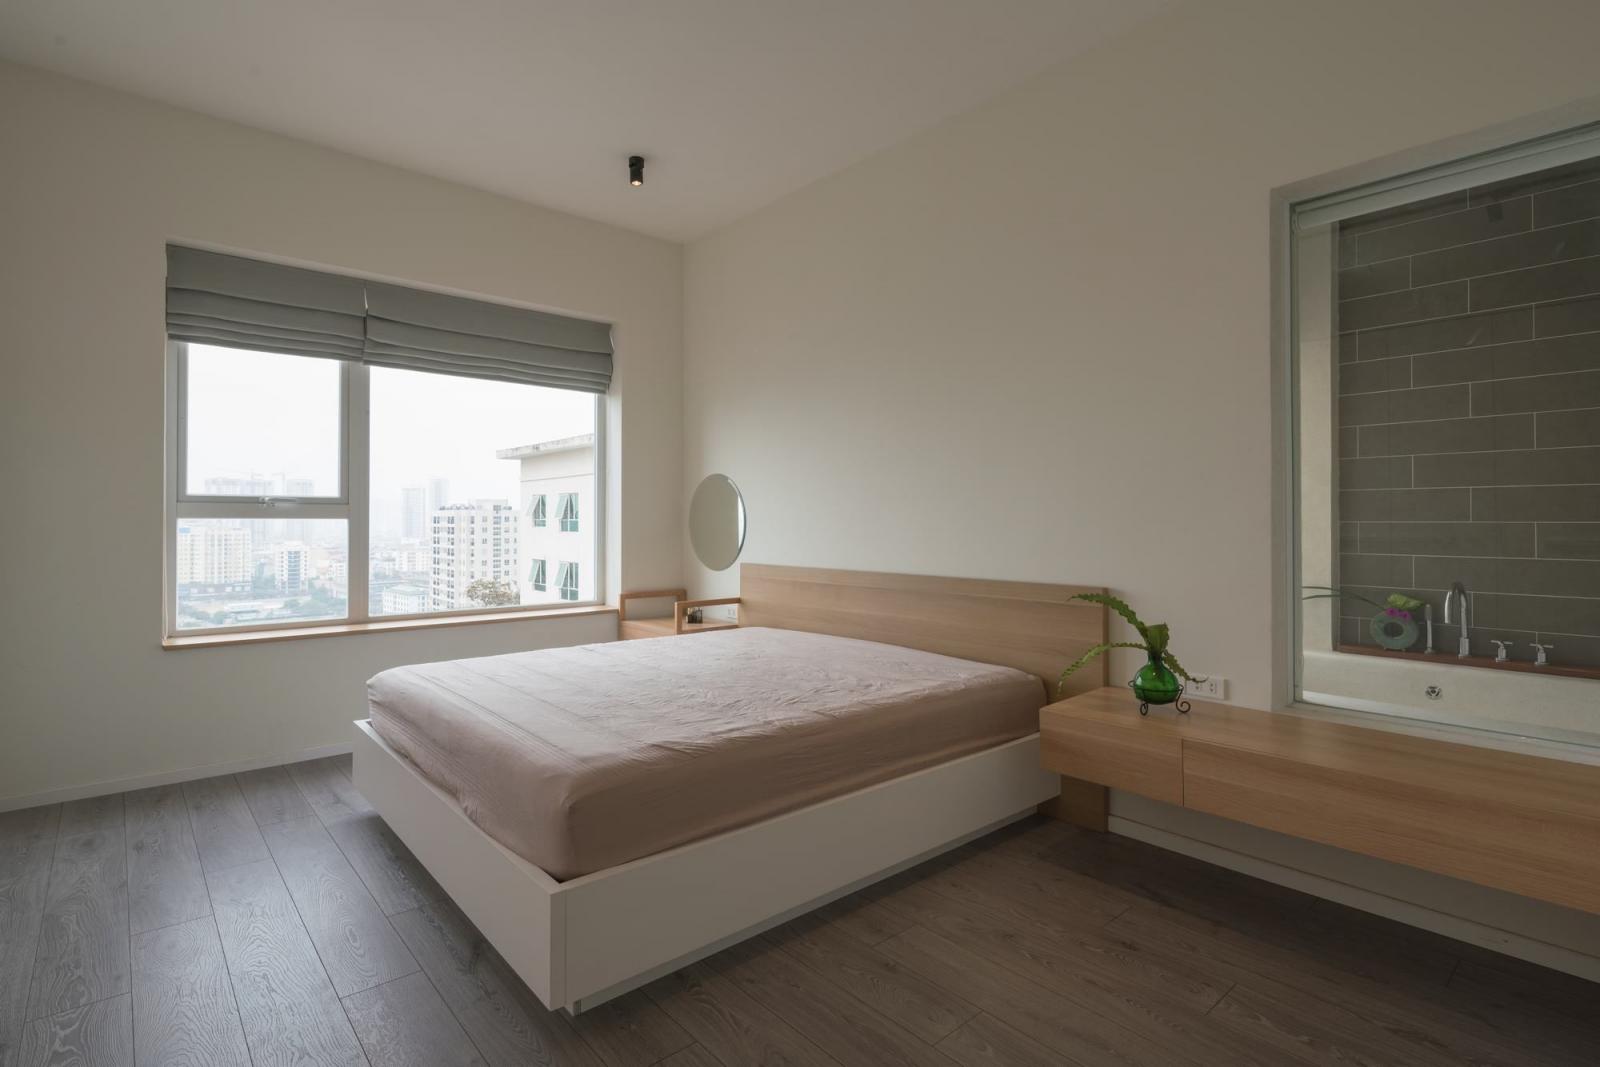 Hình ảnh toàn cảnh phòng ngủ đơn giản với giường lớn, ga màu hồng phấn đặt cạnh cửa sổ kính, hai bên là tab gỗ